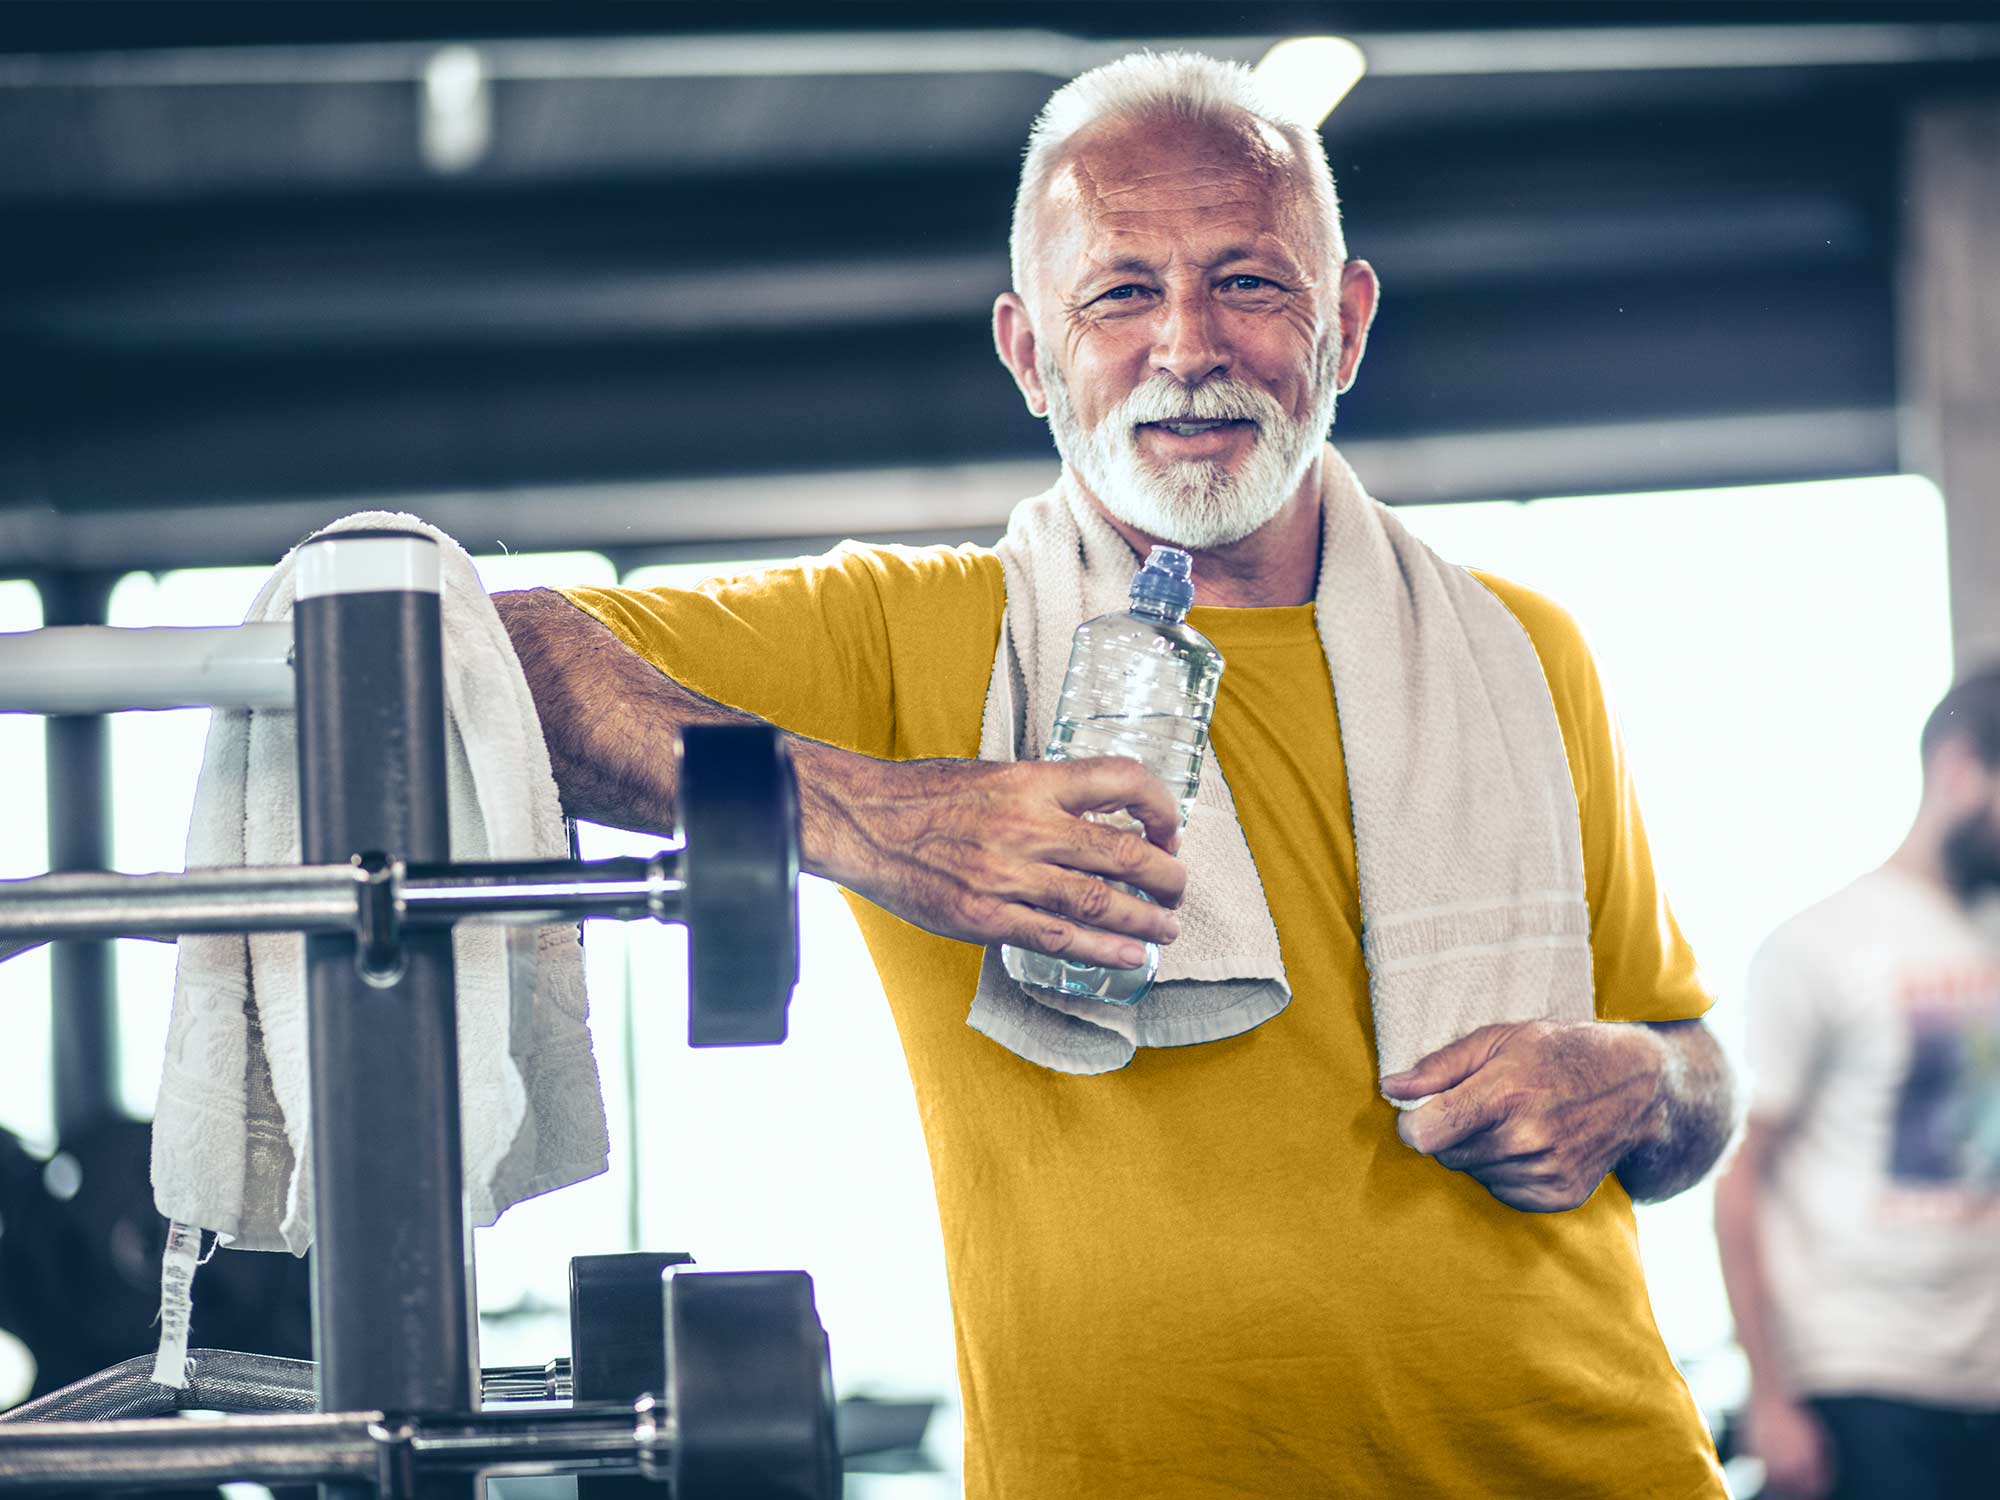 Fitnessgeräte für Senioren: Welche Geräte eignen sich für ältere Menschen?